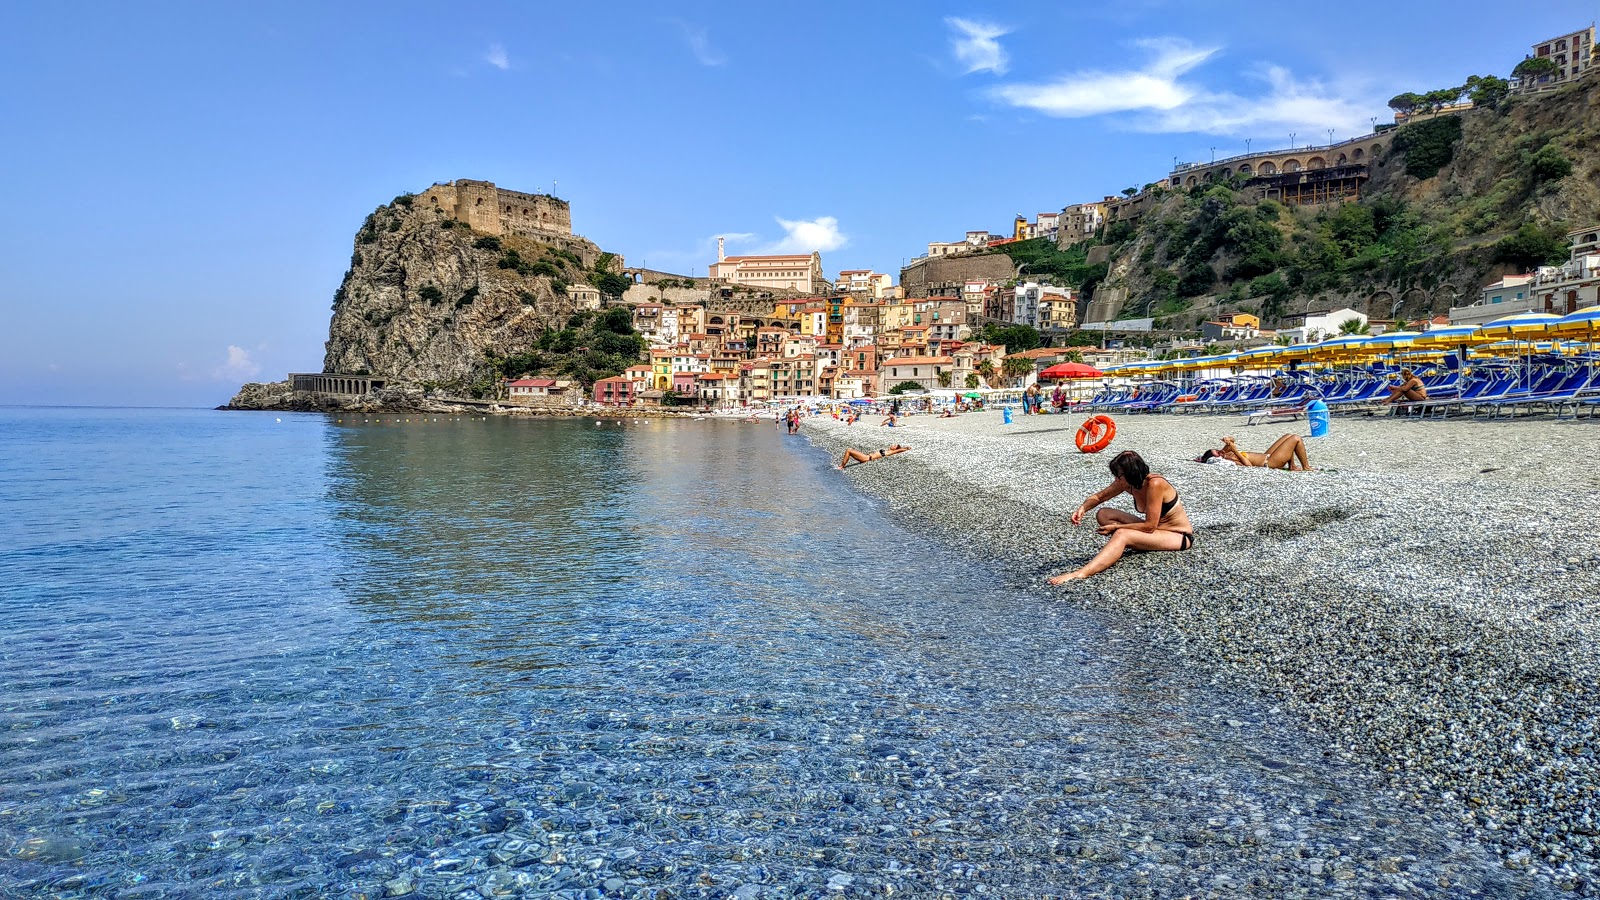 Photo of Spiaggia Di Scilla with bright sand surface